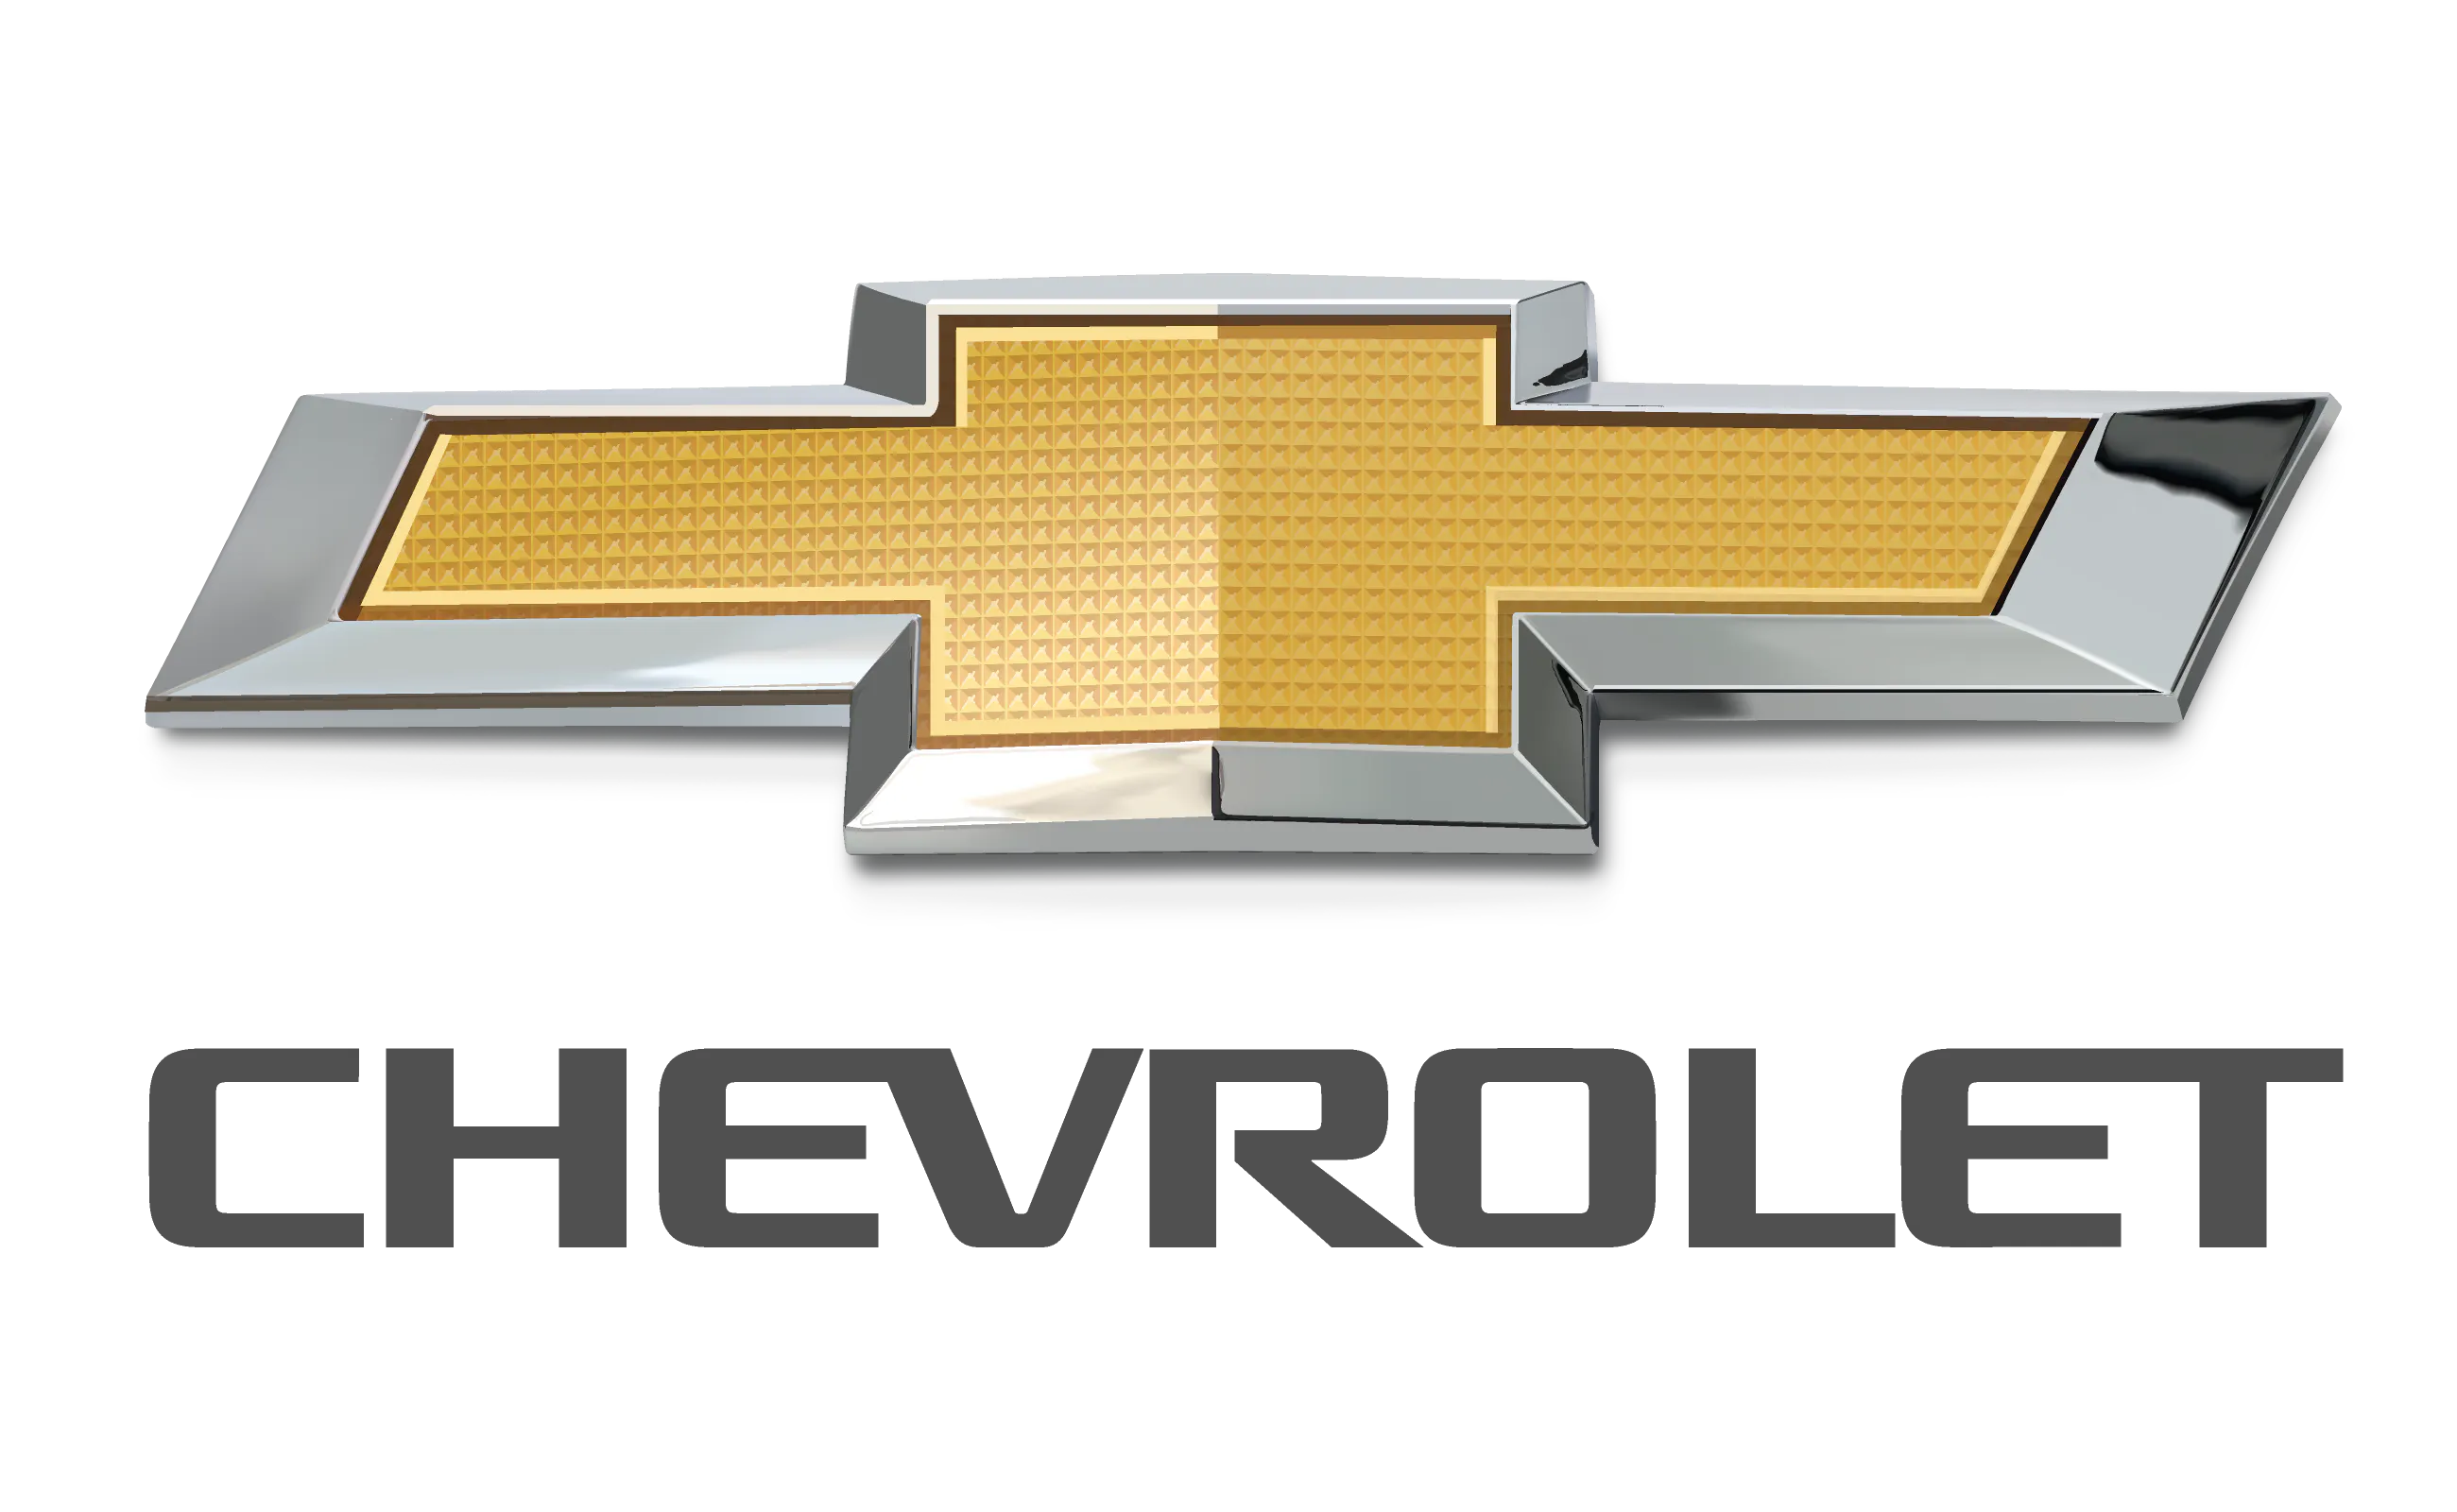 Seguro Auto para Chevrolet na palma da mão